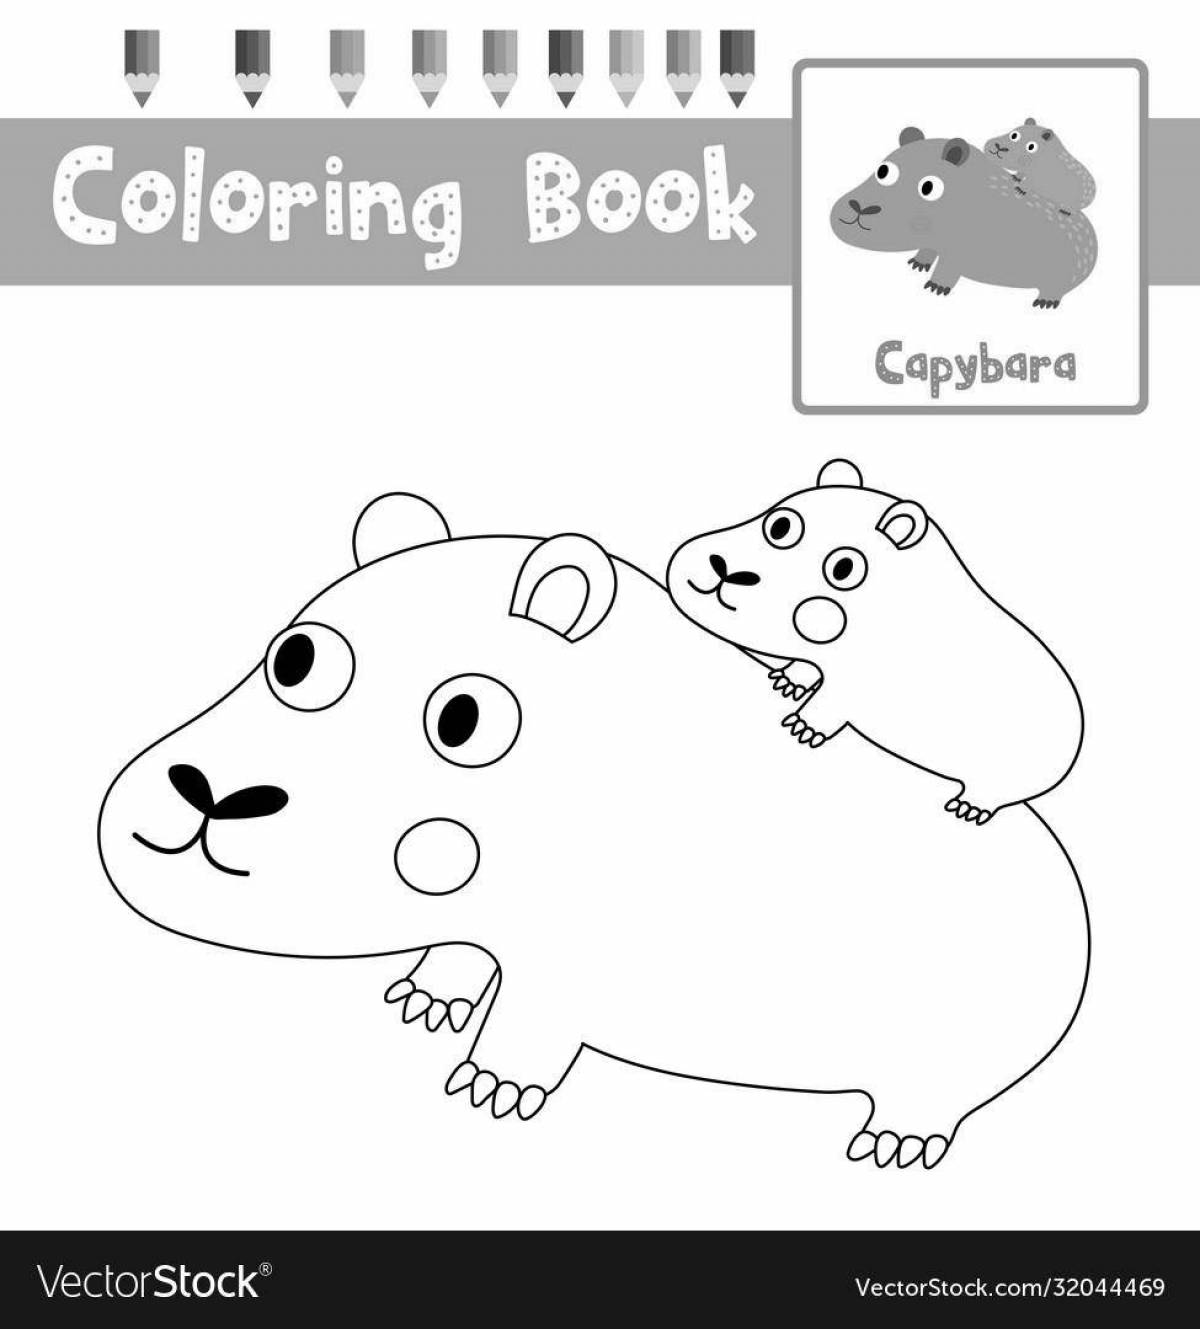 Развлекательная раскраска капибара для детей